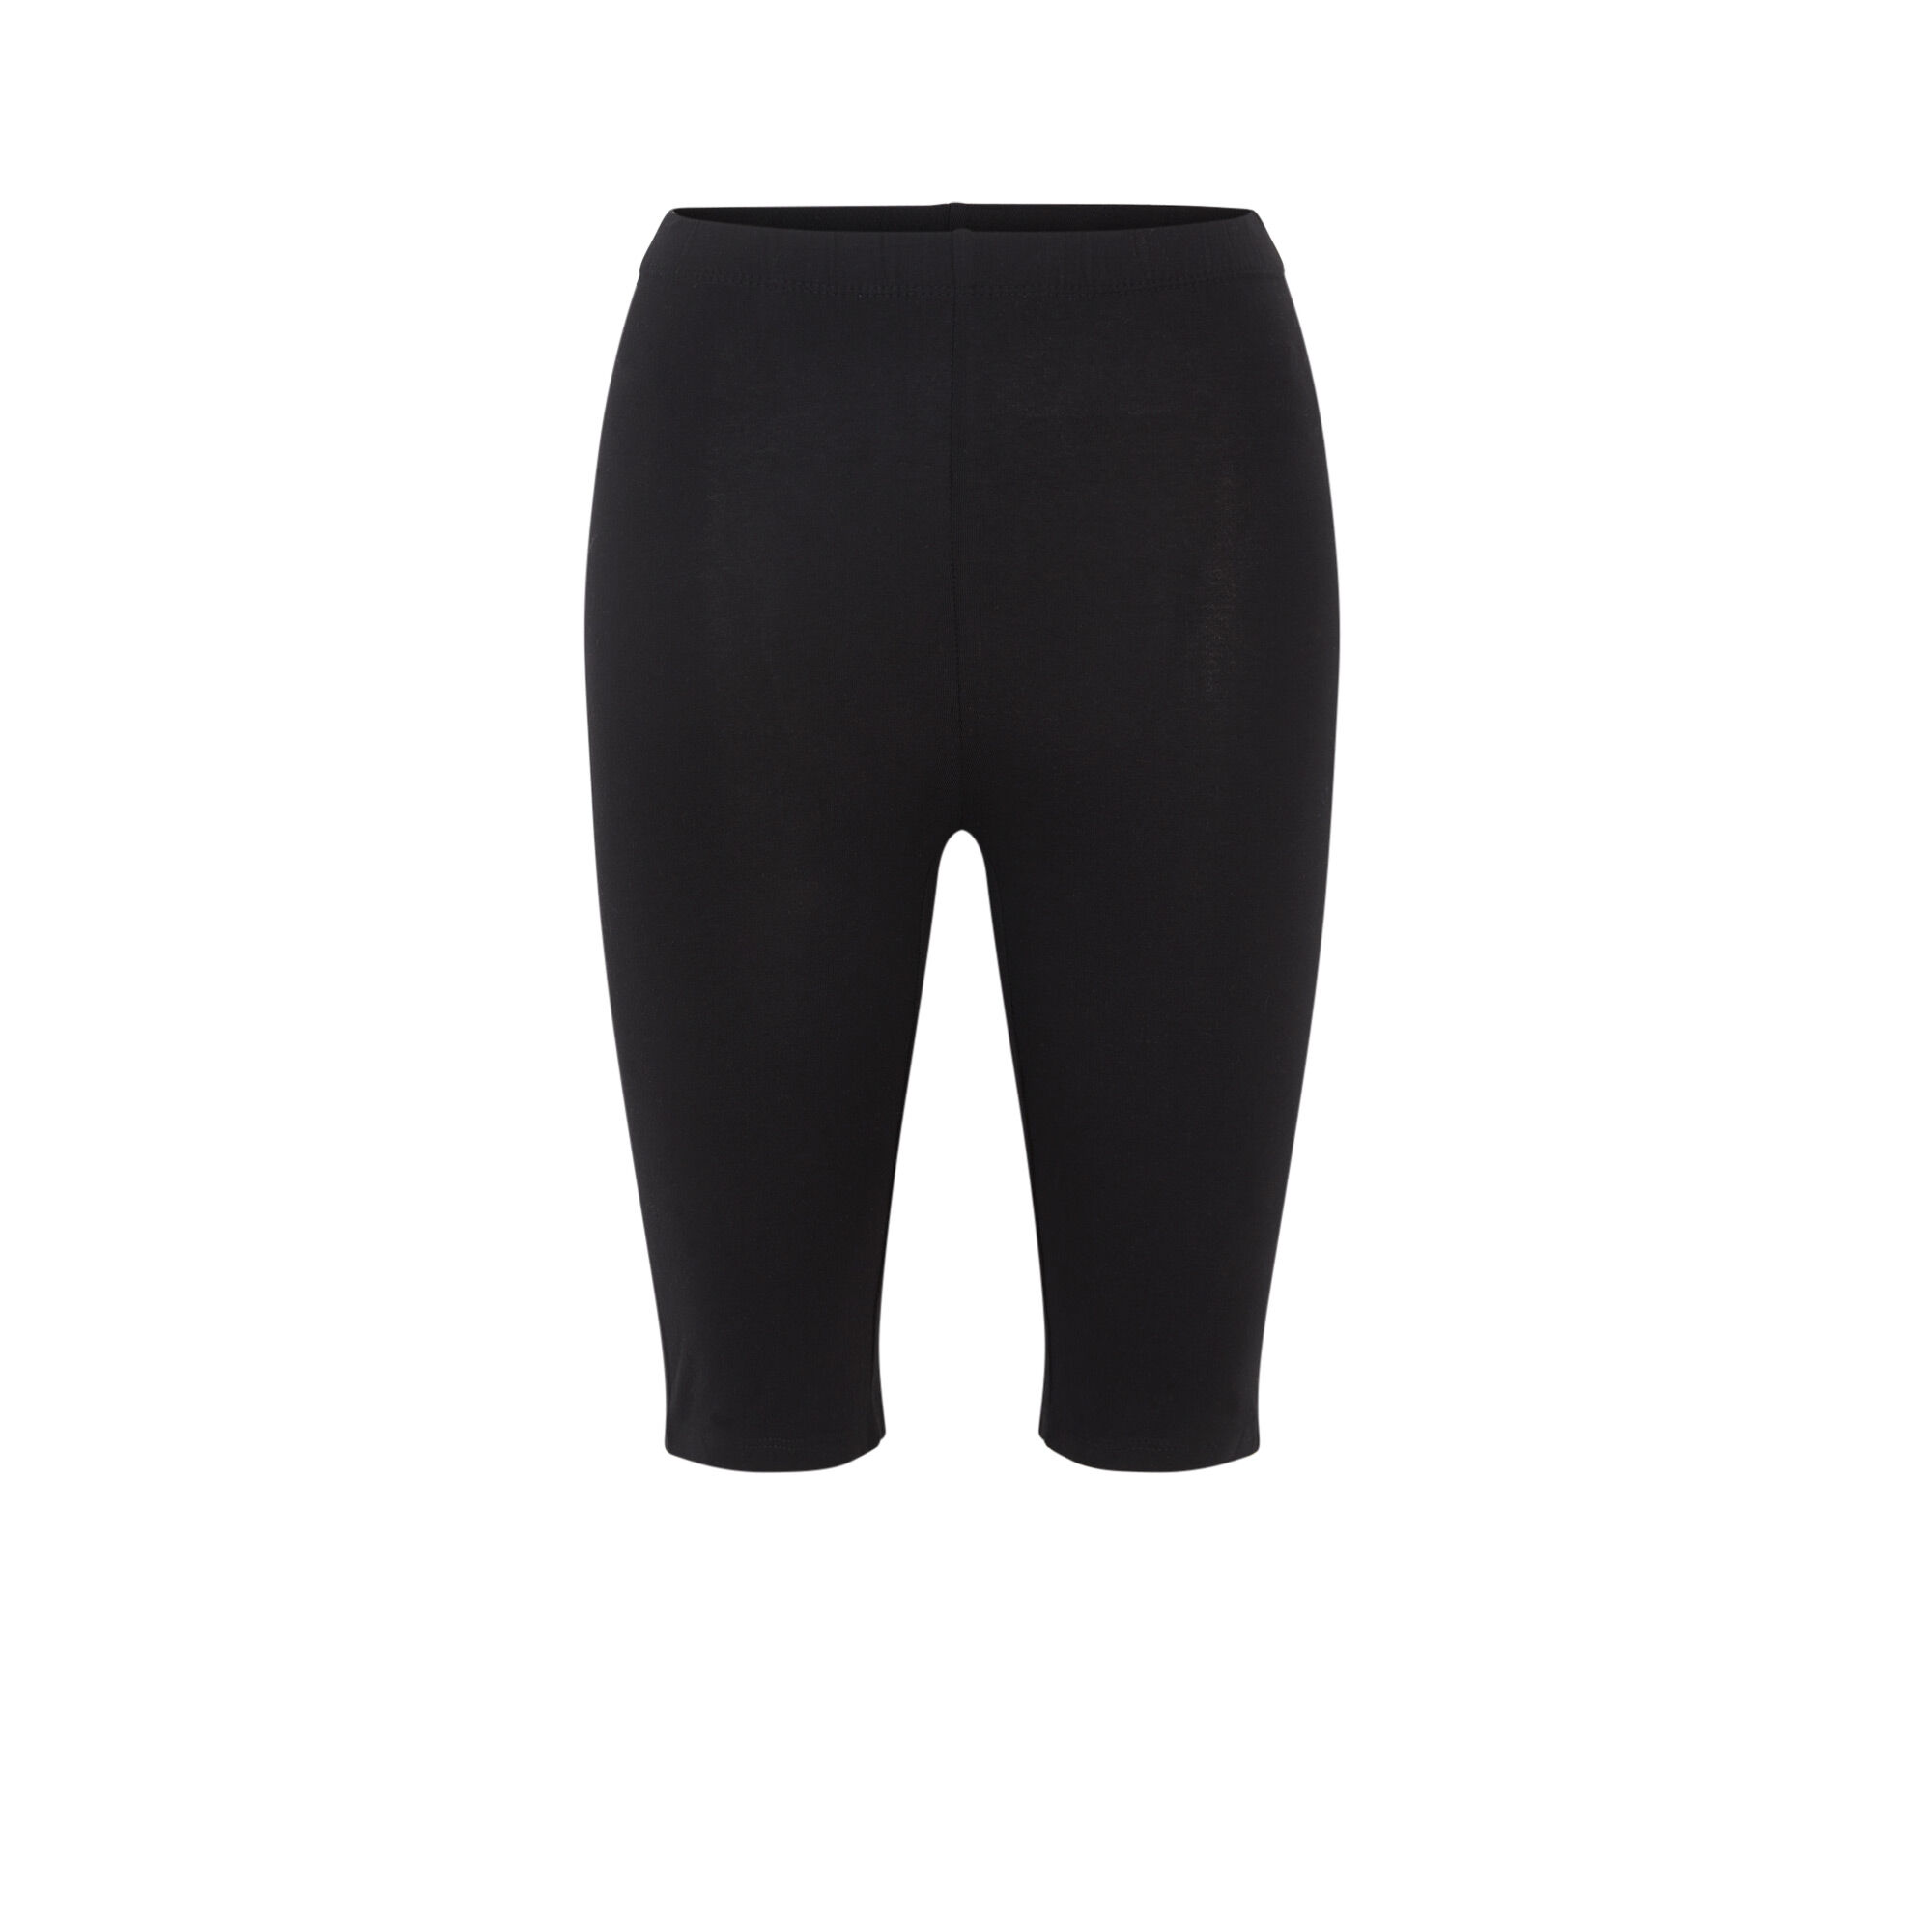 plain black cycling shorts